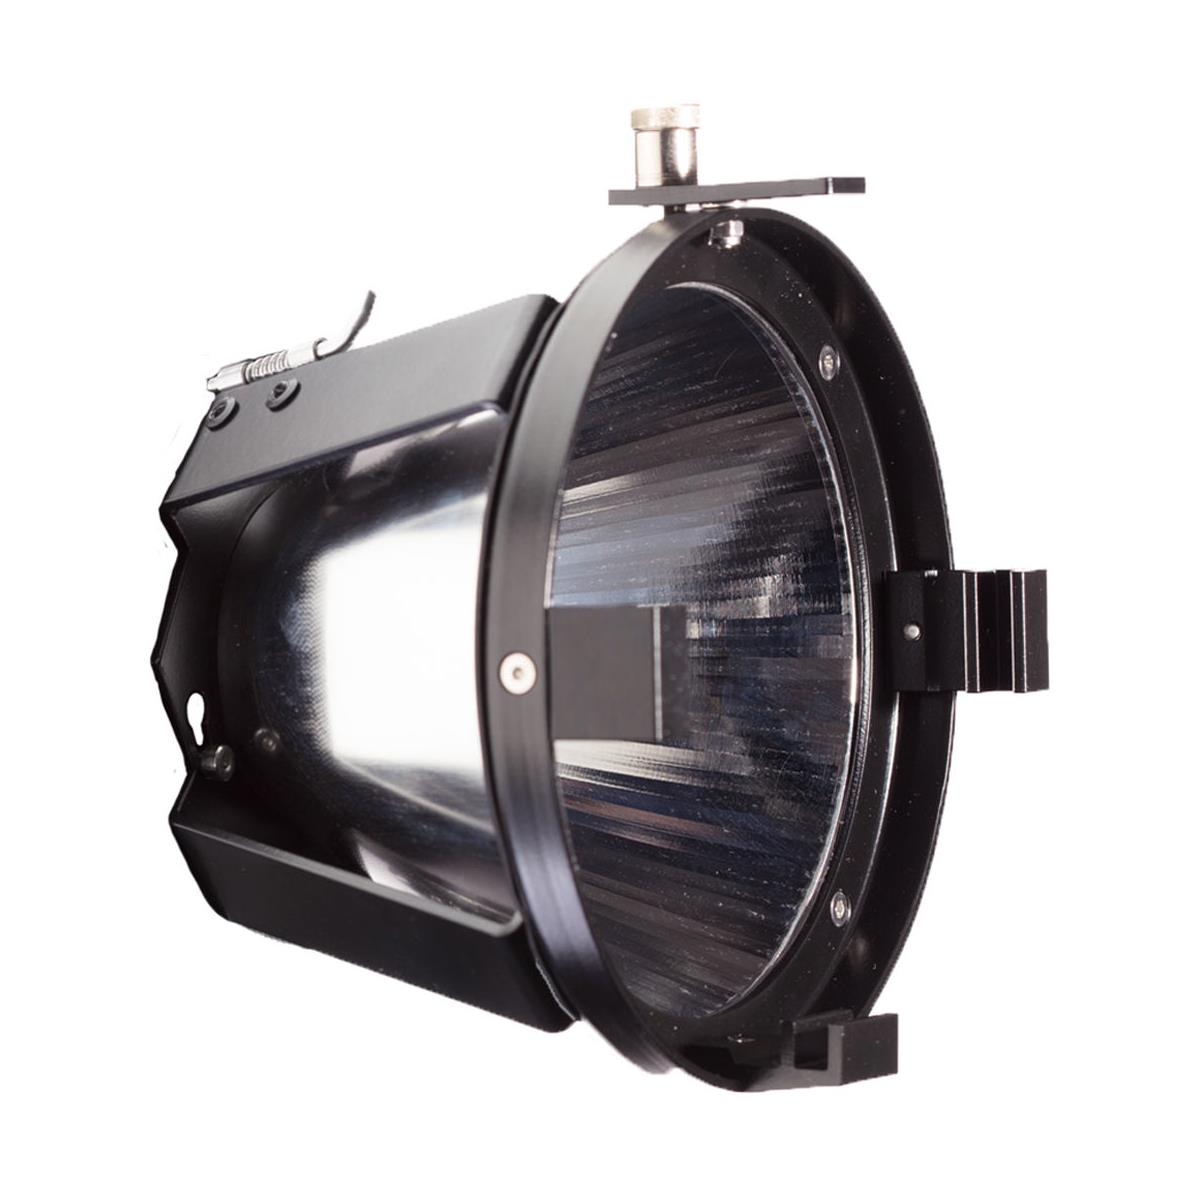 Image of Hive Par Reflector for Hornet 200-C LED Light